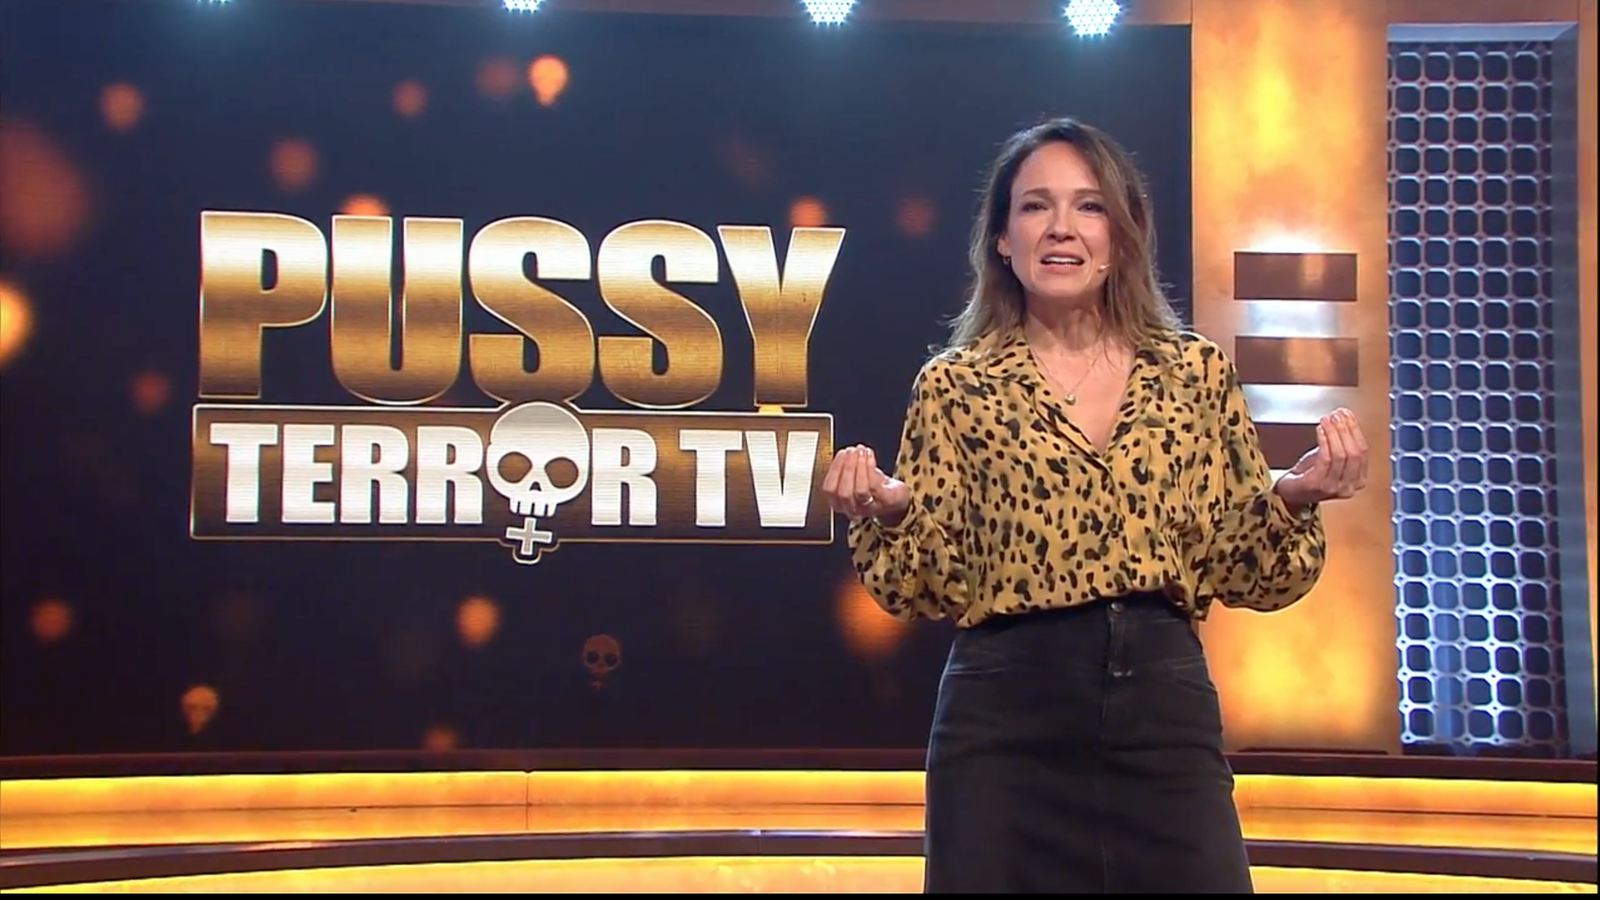 Pussyterror Tv 05 2019 Pussyterror Tv Fernsehen Wdr